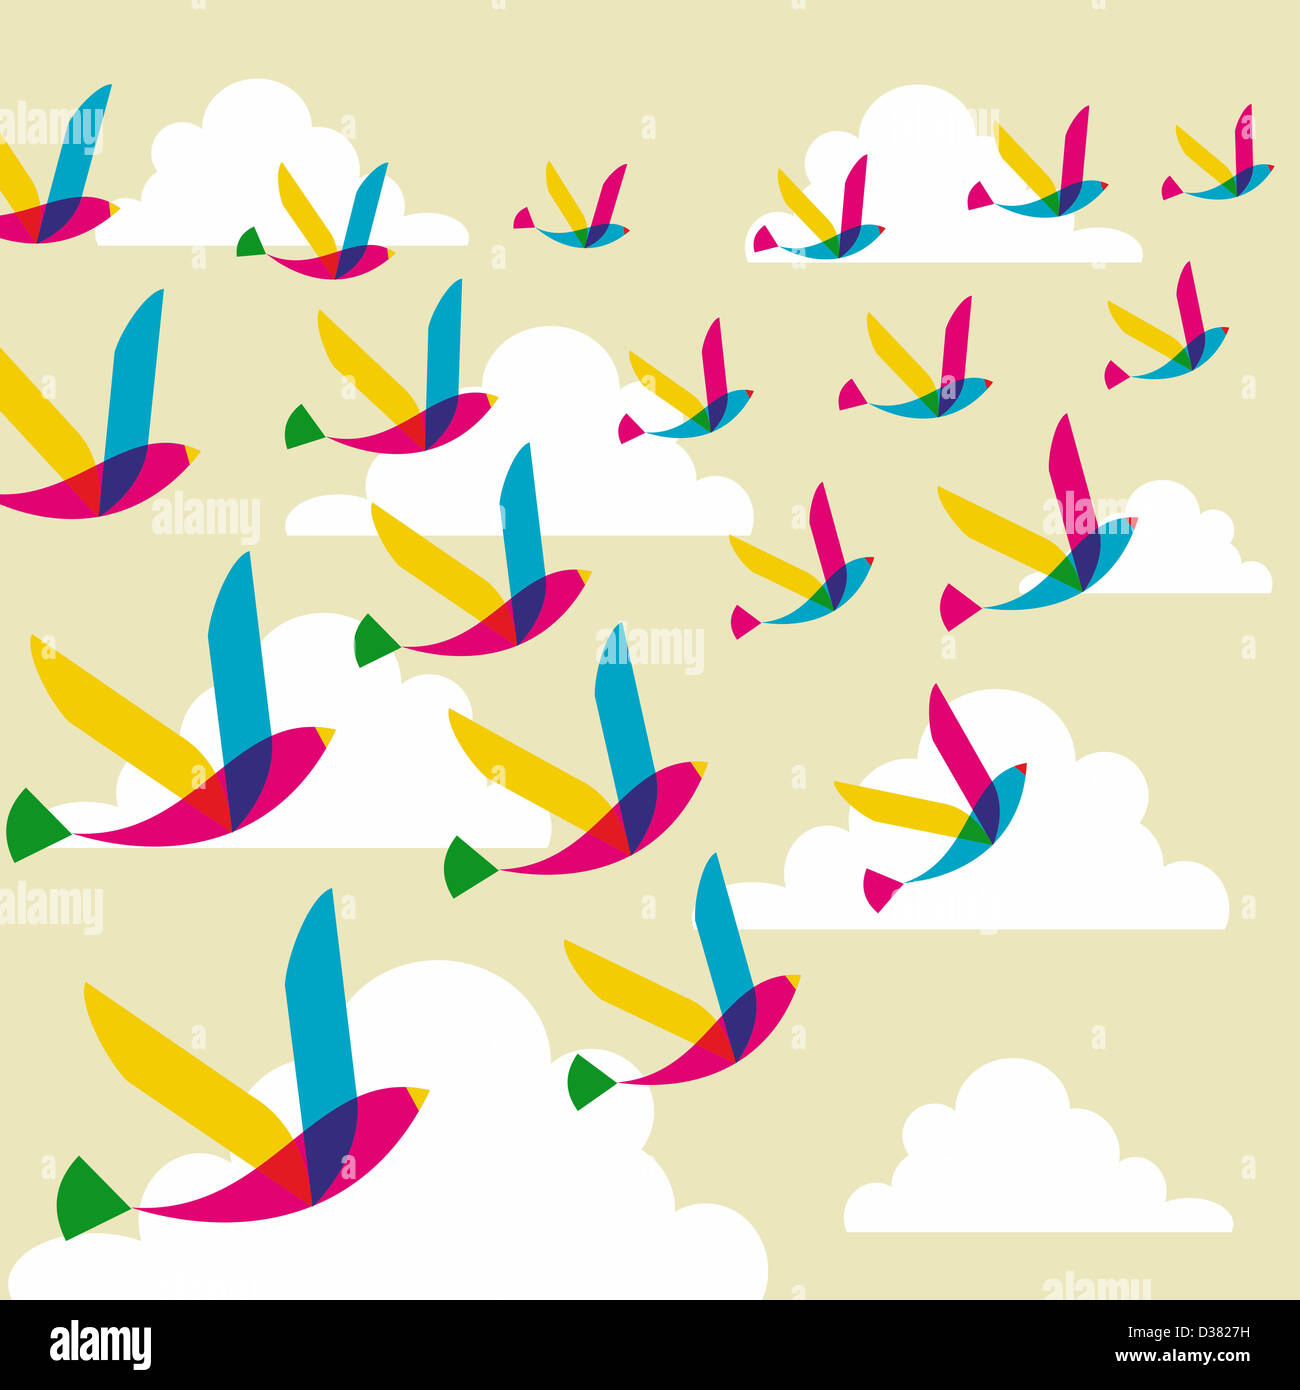 La transparence du printemps les oiseaux en plein vol modèle homogène. Couches de fichier vectoriel pour une manipulation facile et coloris. Banque D'Images